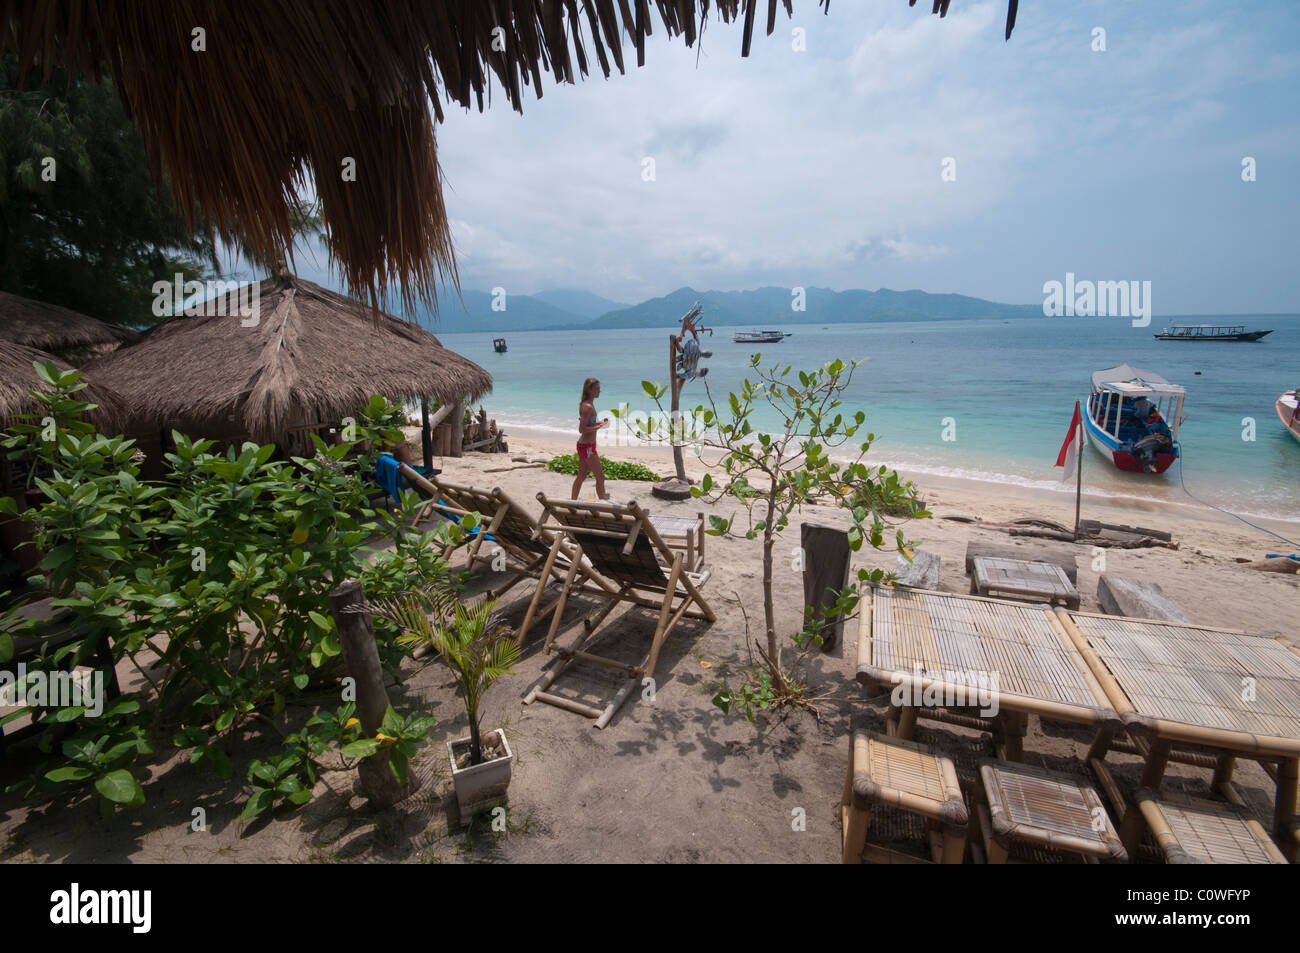 La petite plage de Gili Air la plus petite île du groupe d'îles Gili au large de Lombok Indonésie Banque D'Images